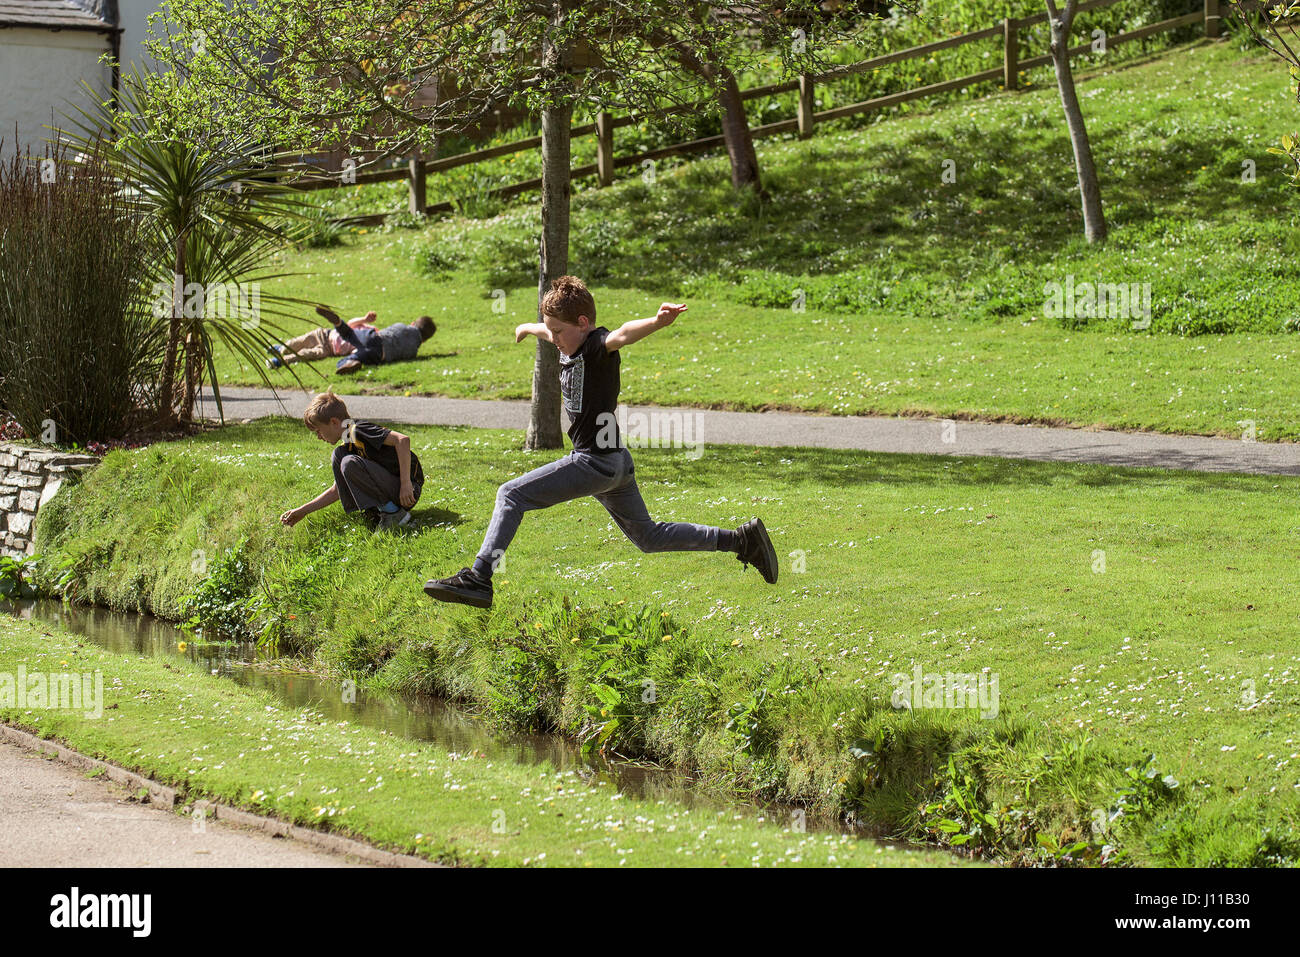 Ragazzo saltando su un flusso bambino ragazzi giocare sforzo fisico energetic energia Park Brook infanzia sfida e avventura Foto Stock